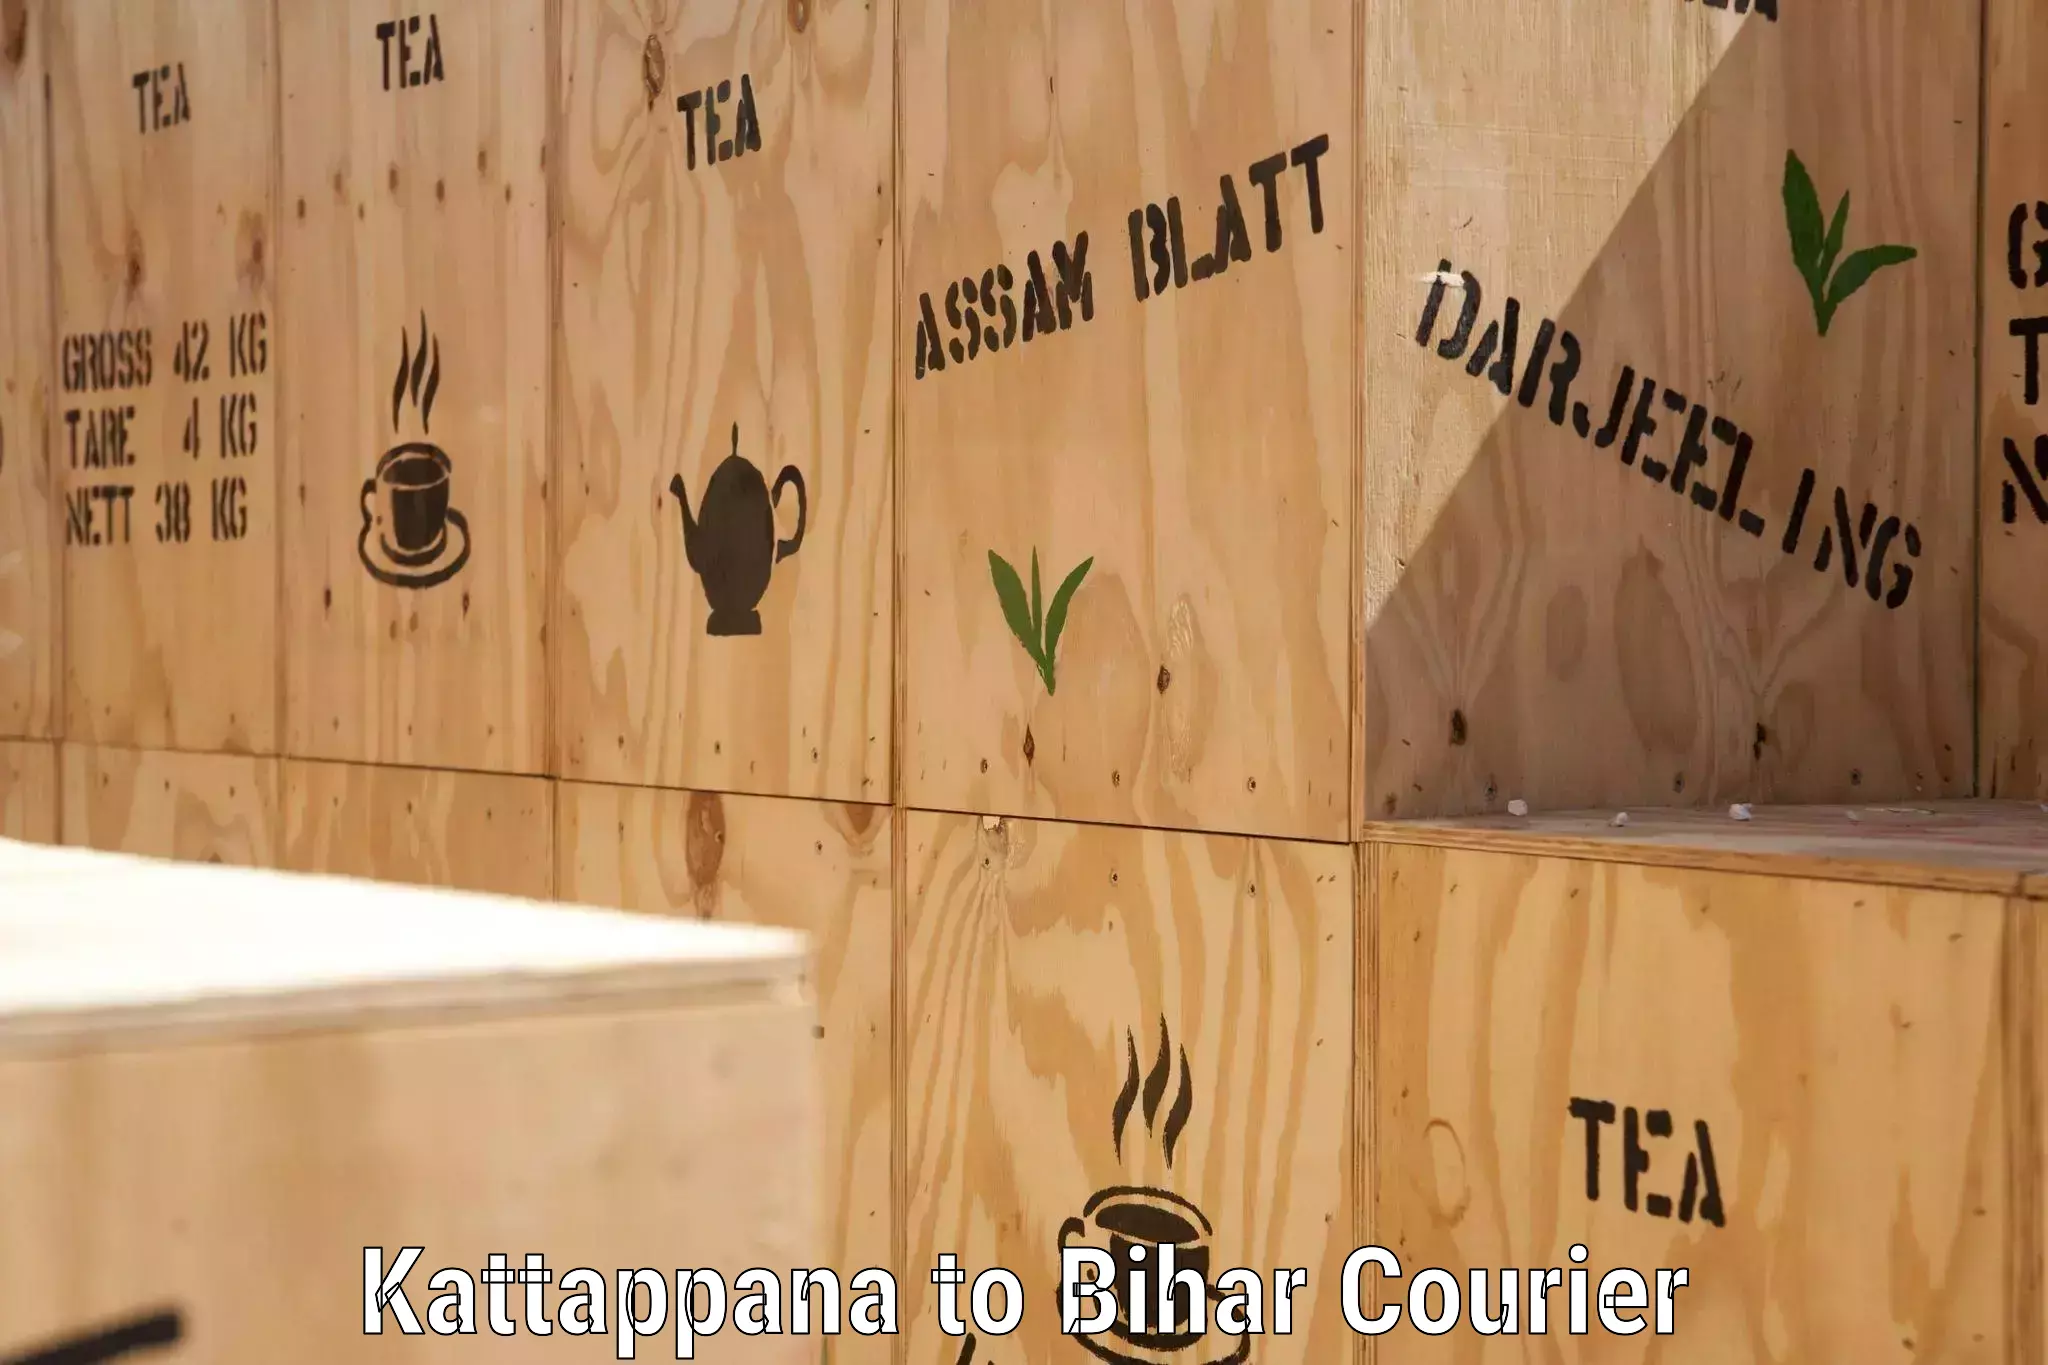 Online shipping calculator Kattappana to Bihar